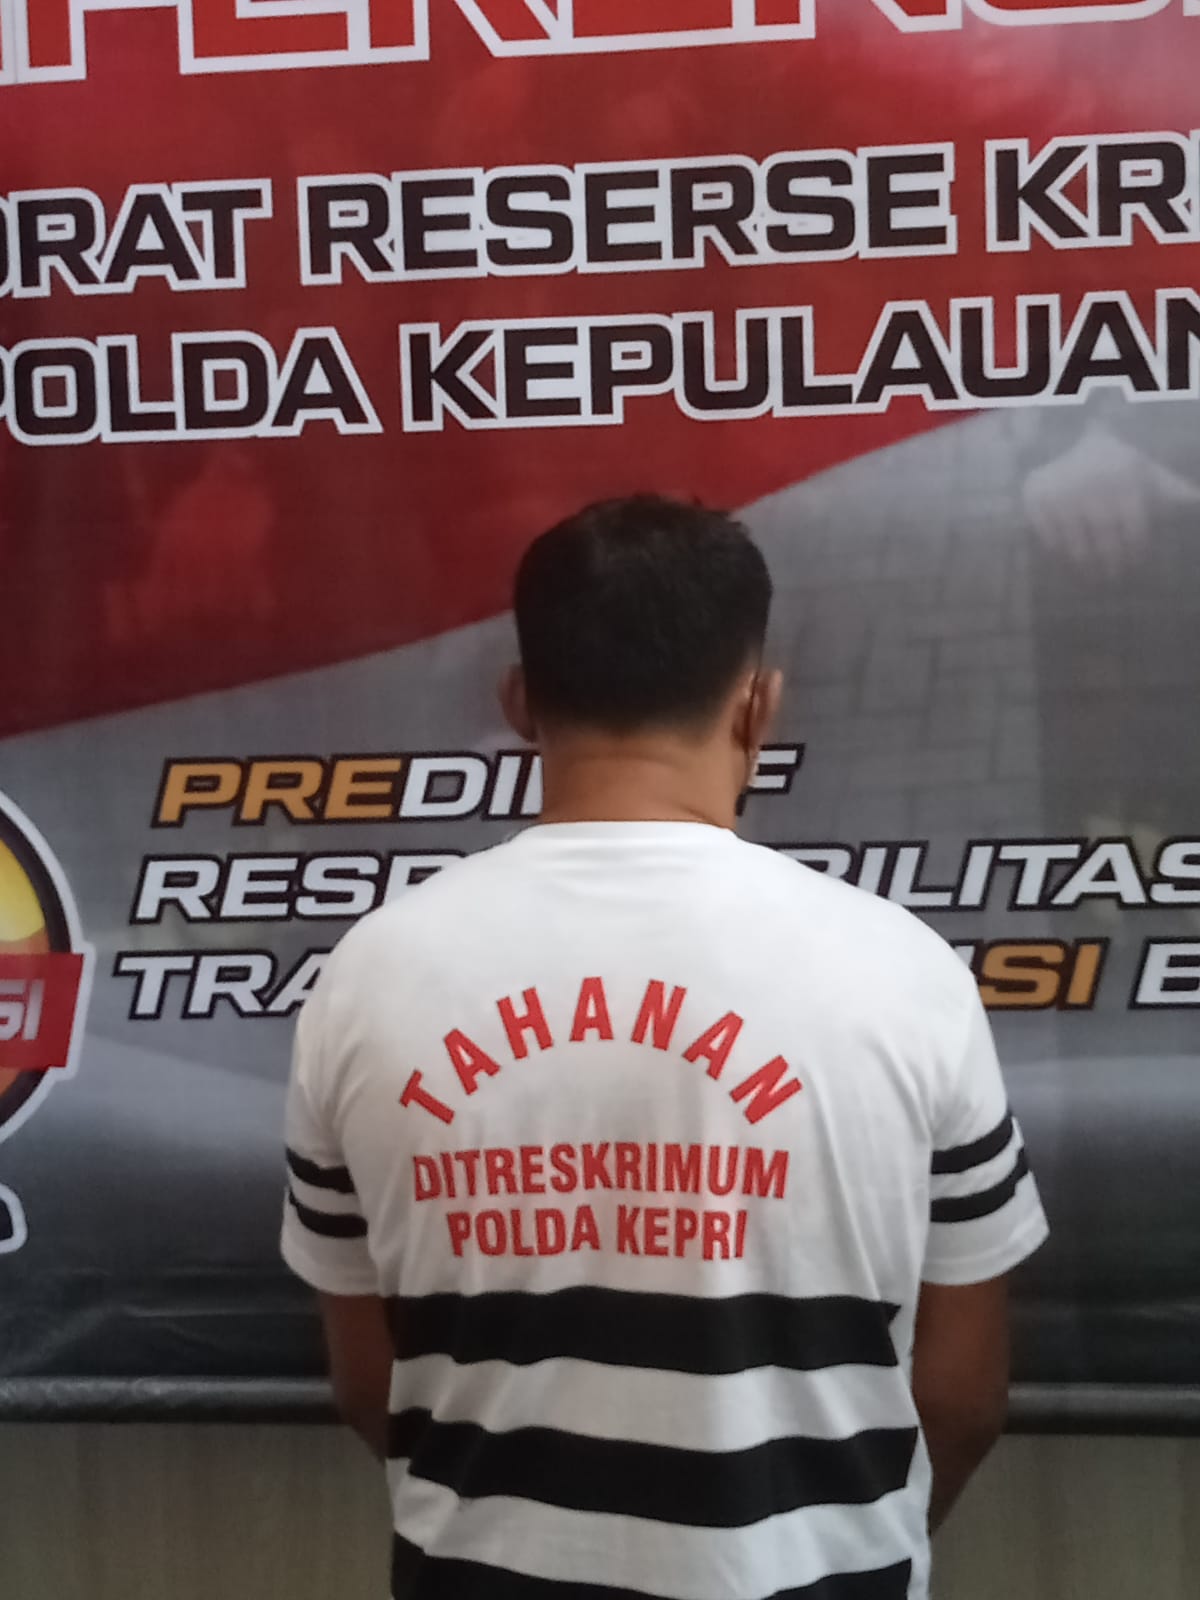 Dir Reskrimum Polda Kepri Gelar Konferensi Pers Ungkap Pelaku Tindak Pidana Pekerja Migran Indonesia Non Prosedural